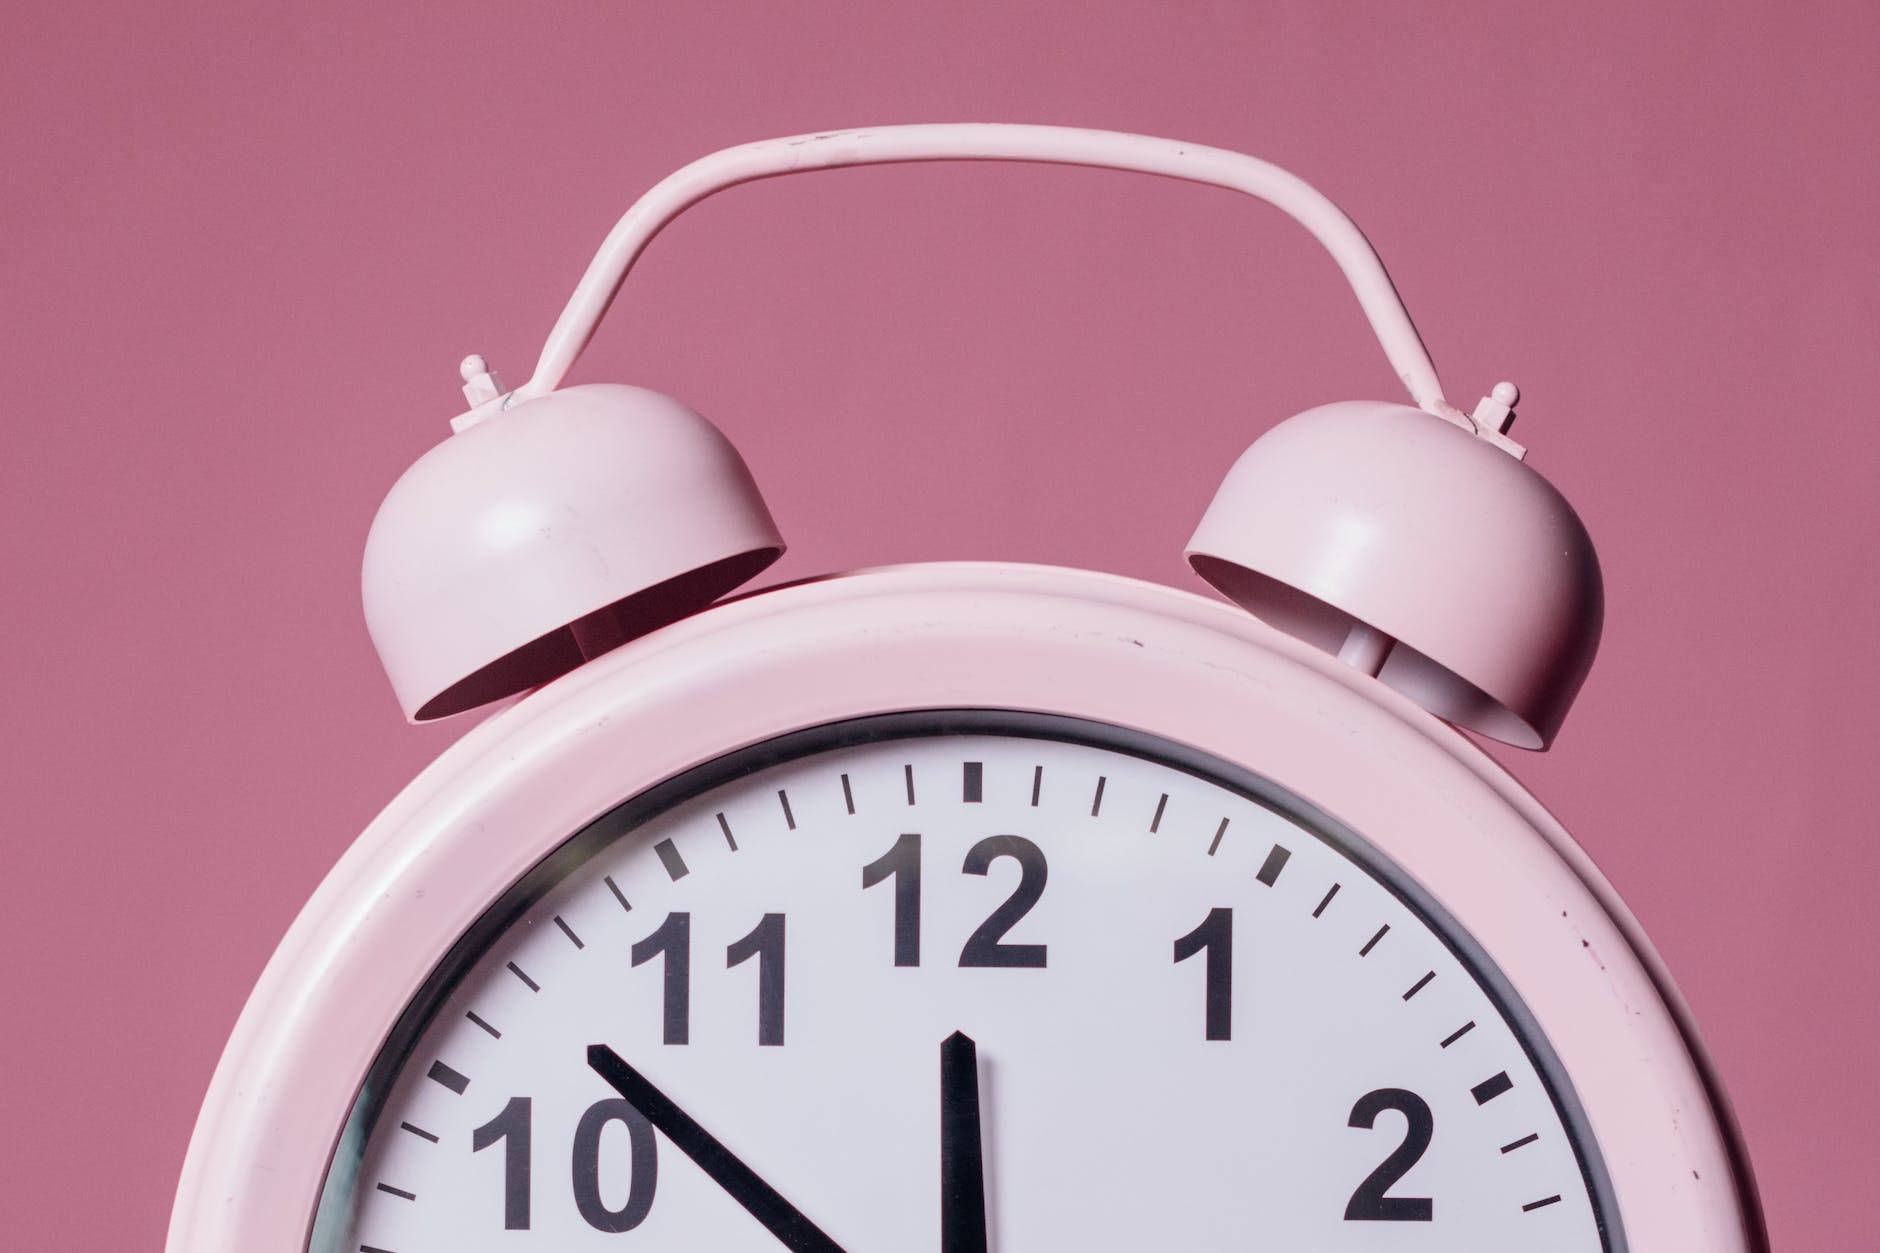 close up photo of pink alarm clock